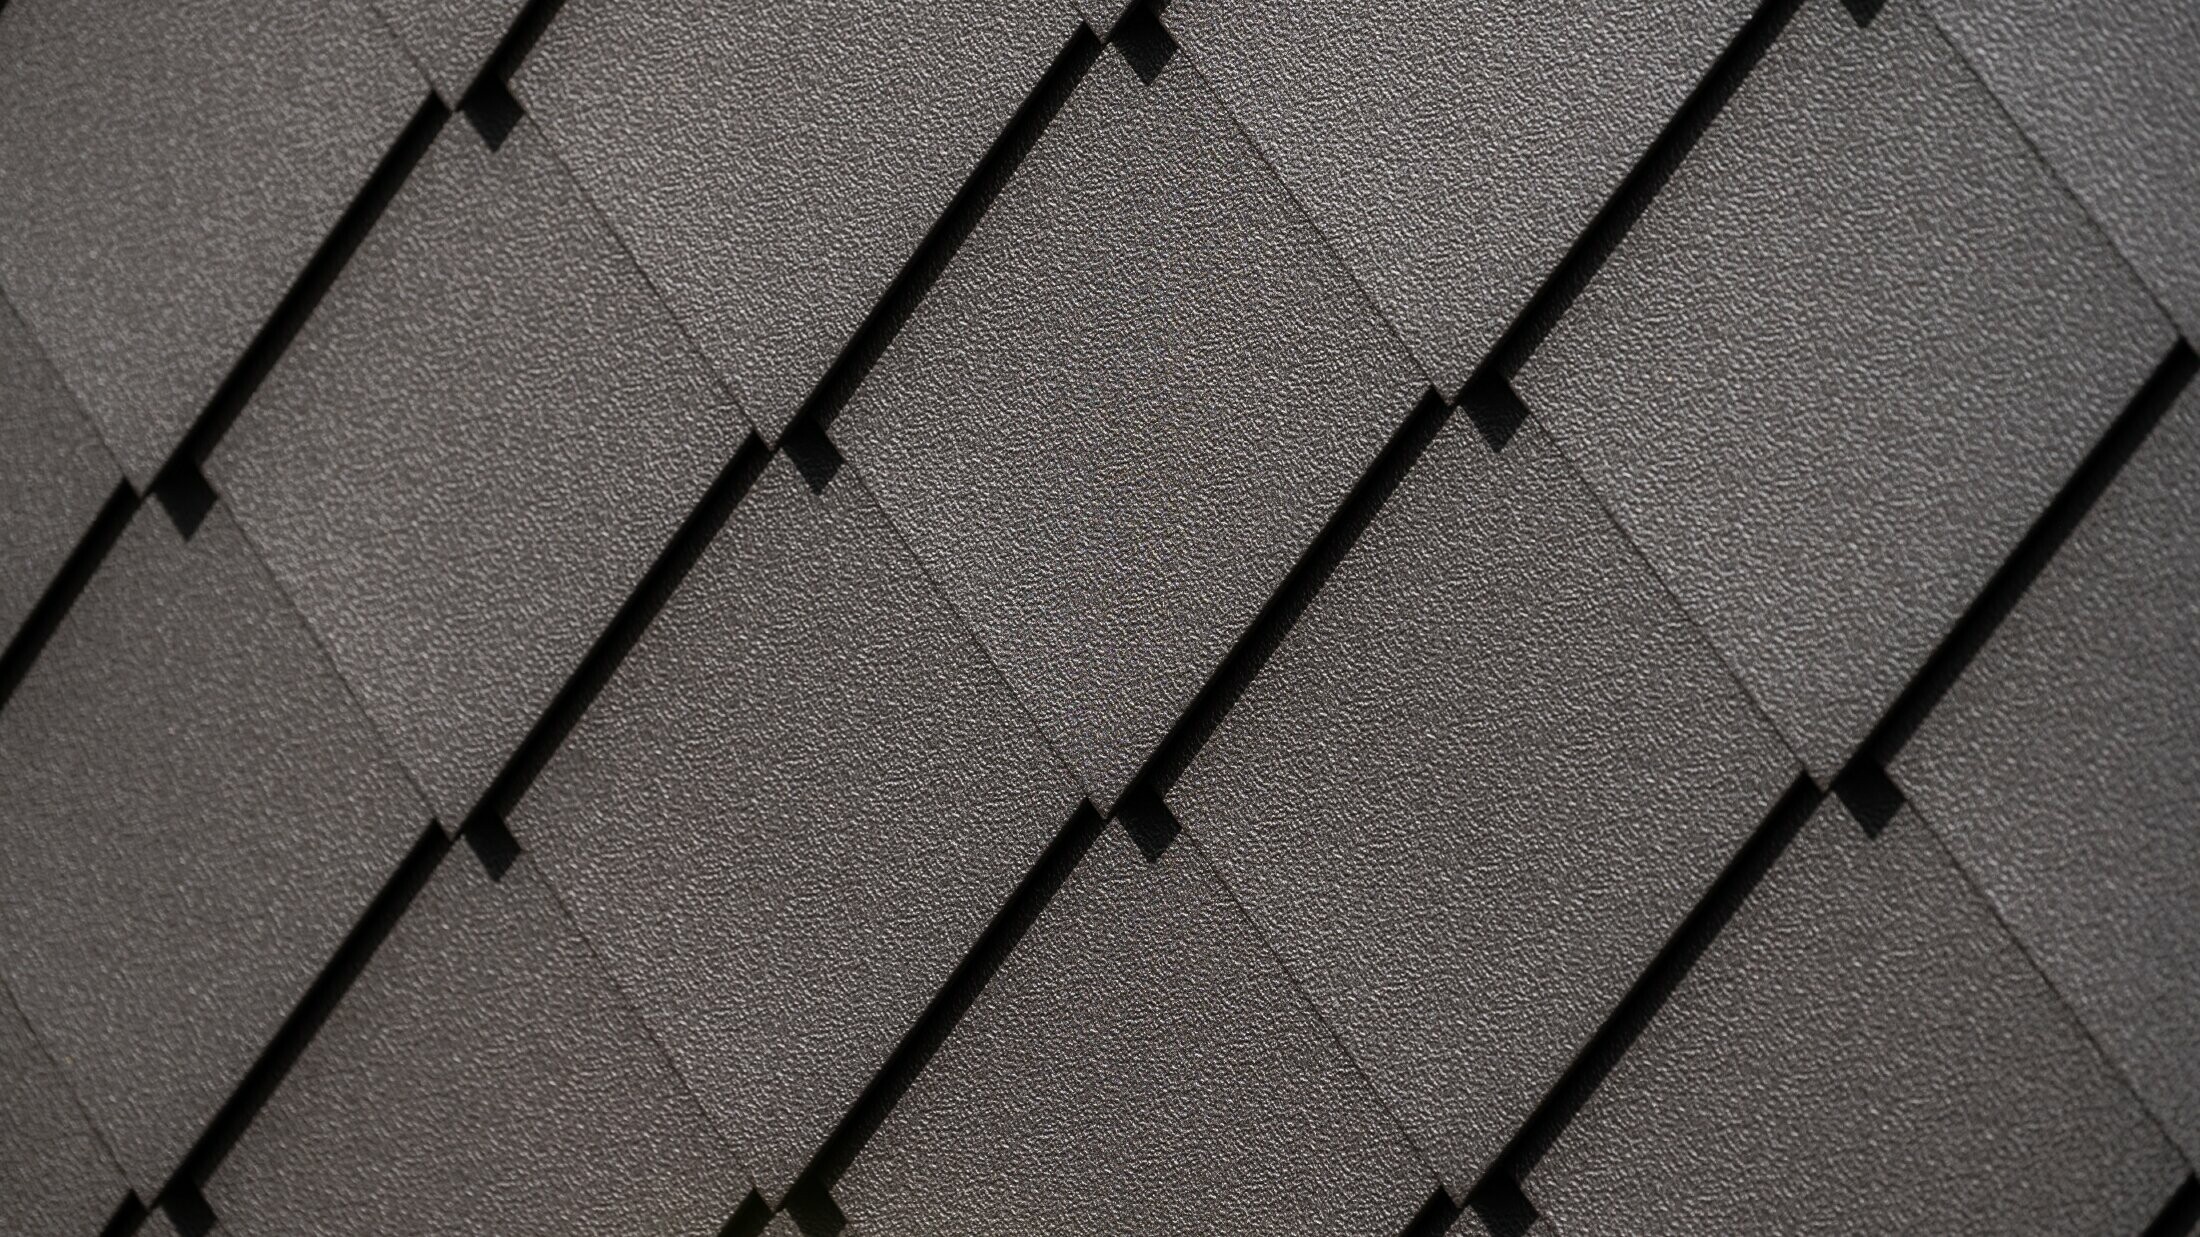 PREFA gevellosange 29 × 29 in hazelnootbruin, detailafbeelding met stucco-oppervlak